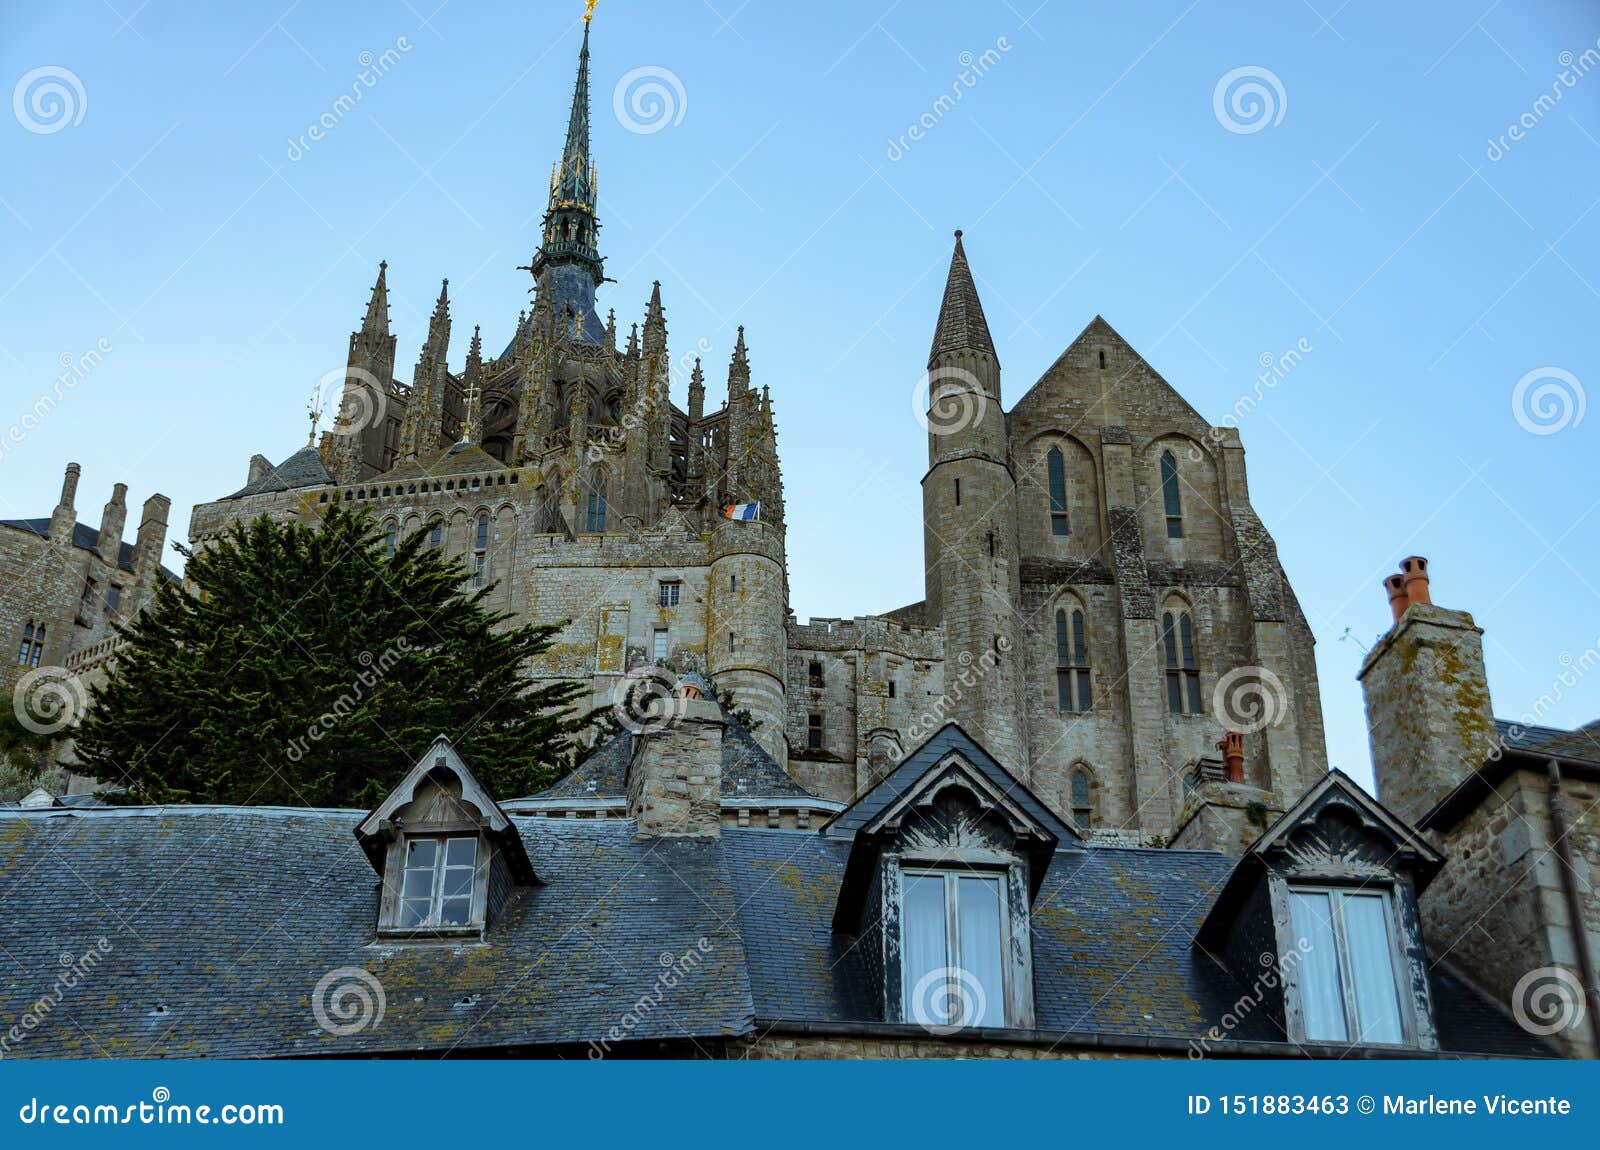 abbey of mont saint michel. france